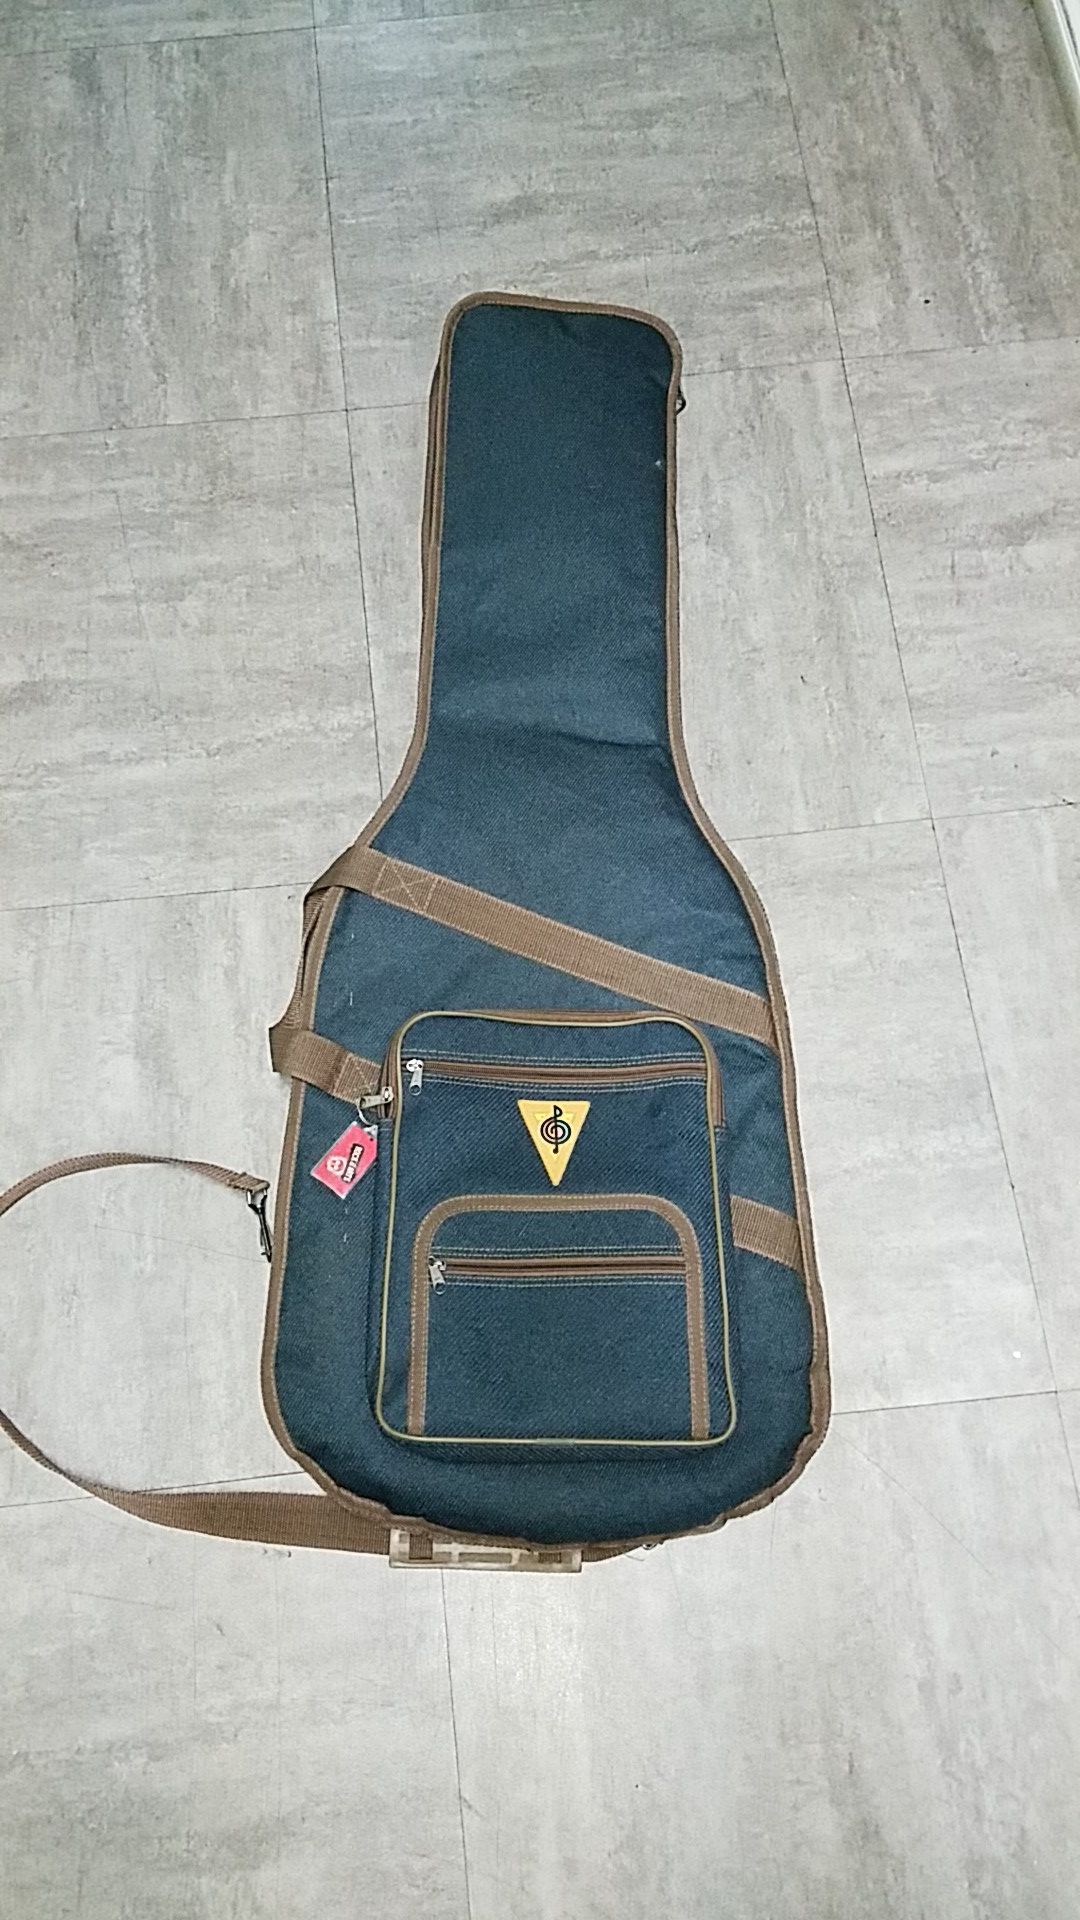 Guitar Soft case. Guitar Bag. High Quality